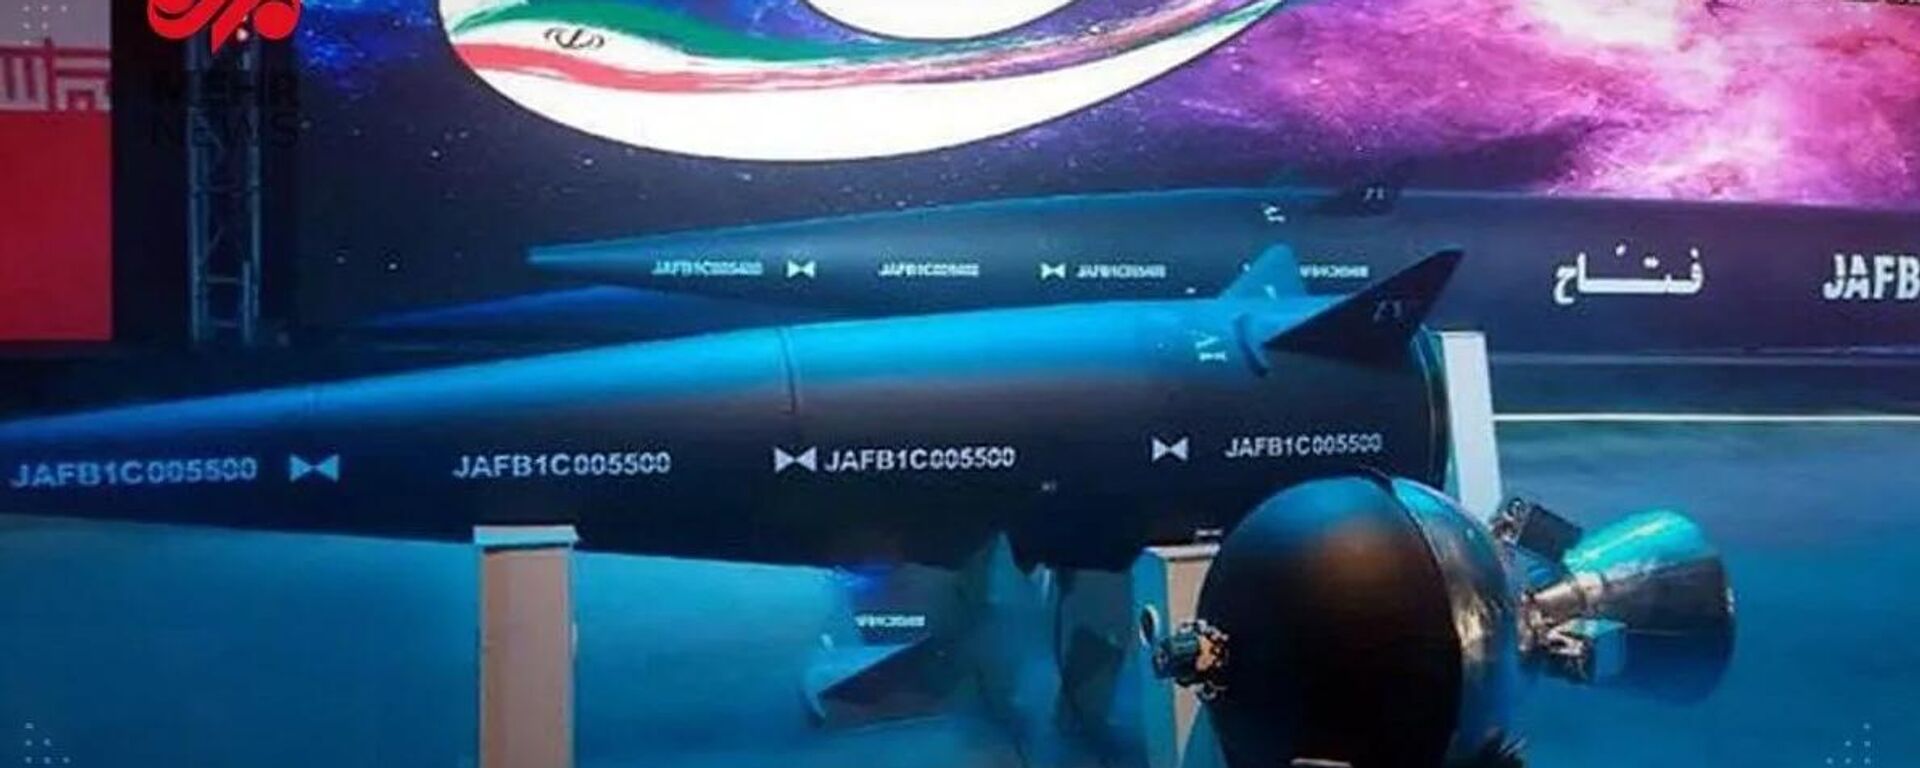 Воздушно-космические силы Корпуса стражей исламской революции Ирана представили новую гиперзвуковую ракету Фаттах - Sputnik Армения, 1920, 12.06.2023